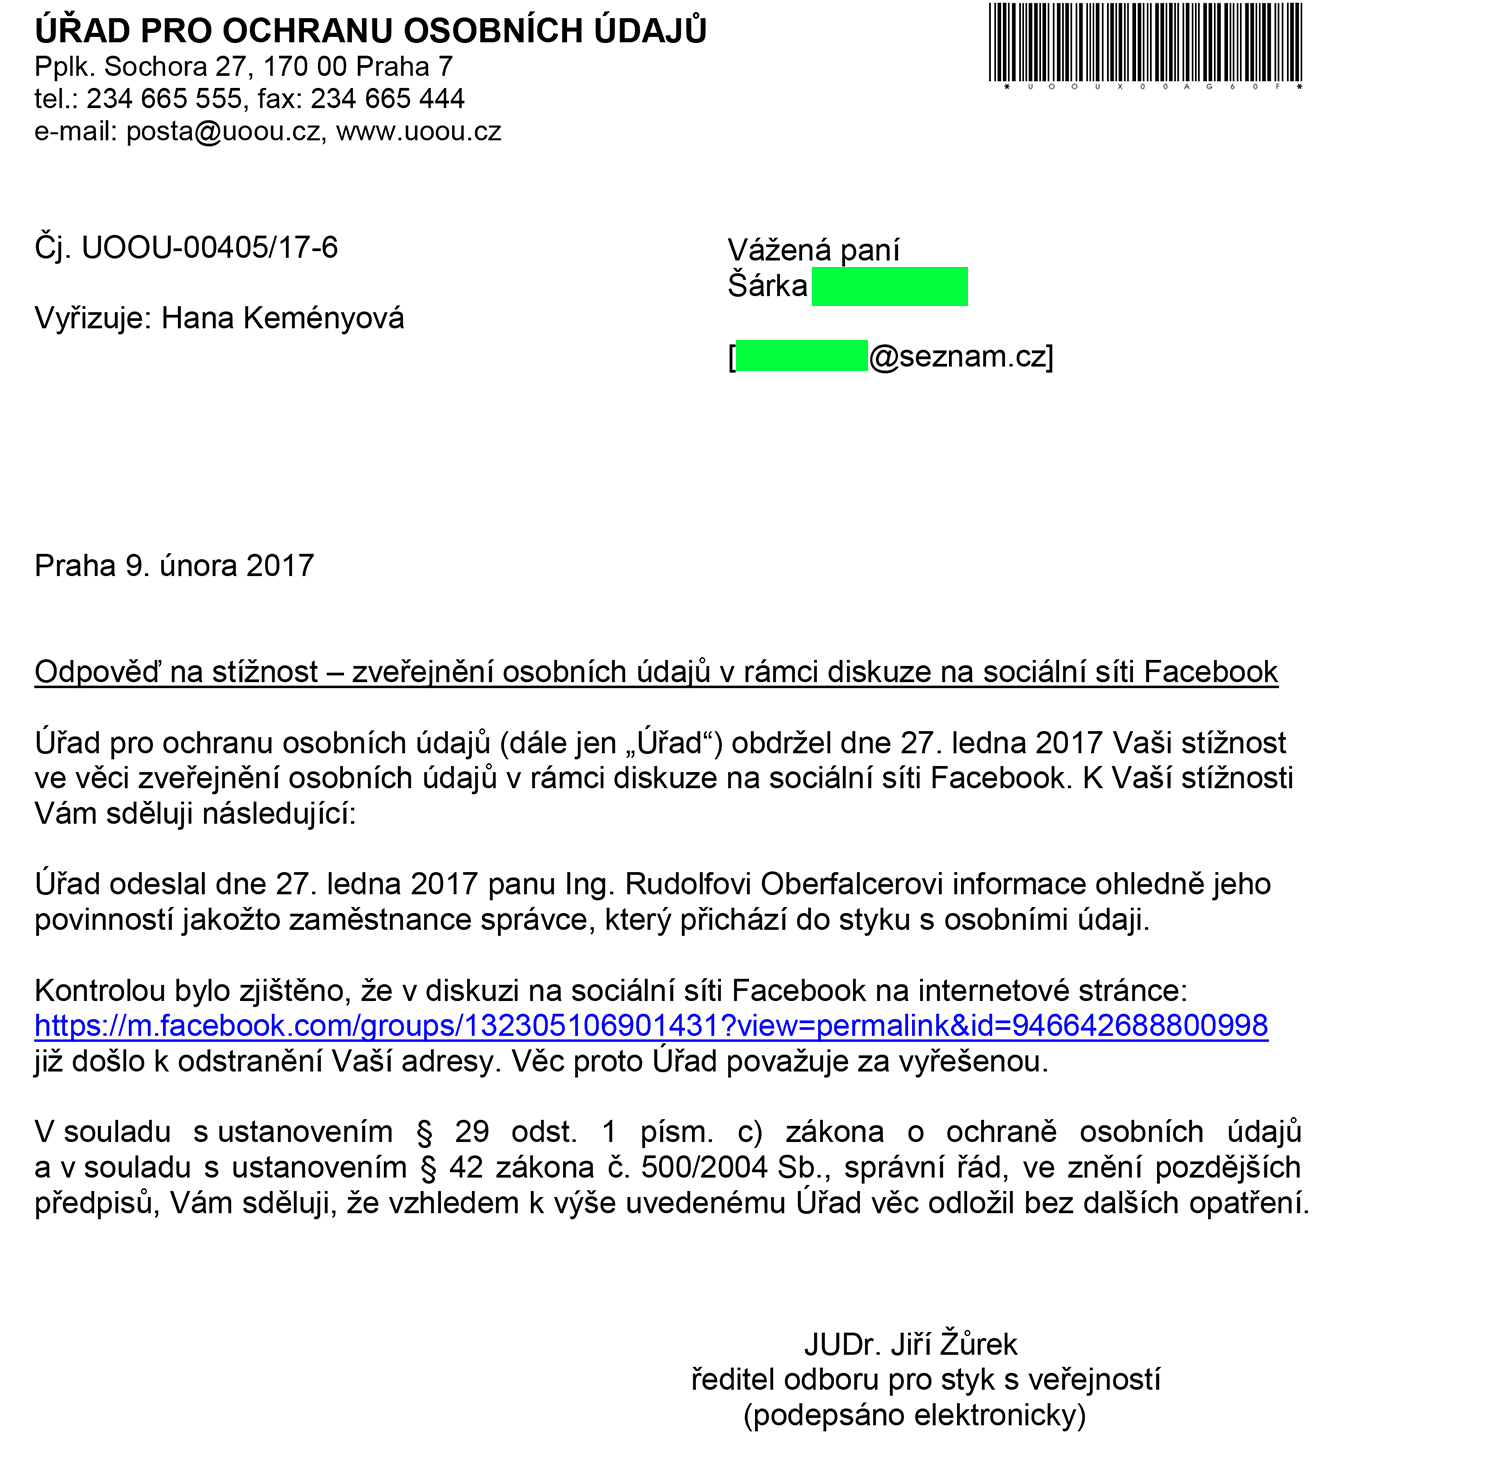 Na obhajobu práv paní Šárky musel reagovat dne 27.1.2017 i Úřad pro ochranu osobních údajů, který proti radnímu Rudolfu Oberfalcerovi zasáhl